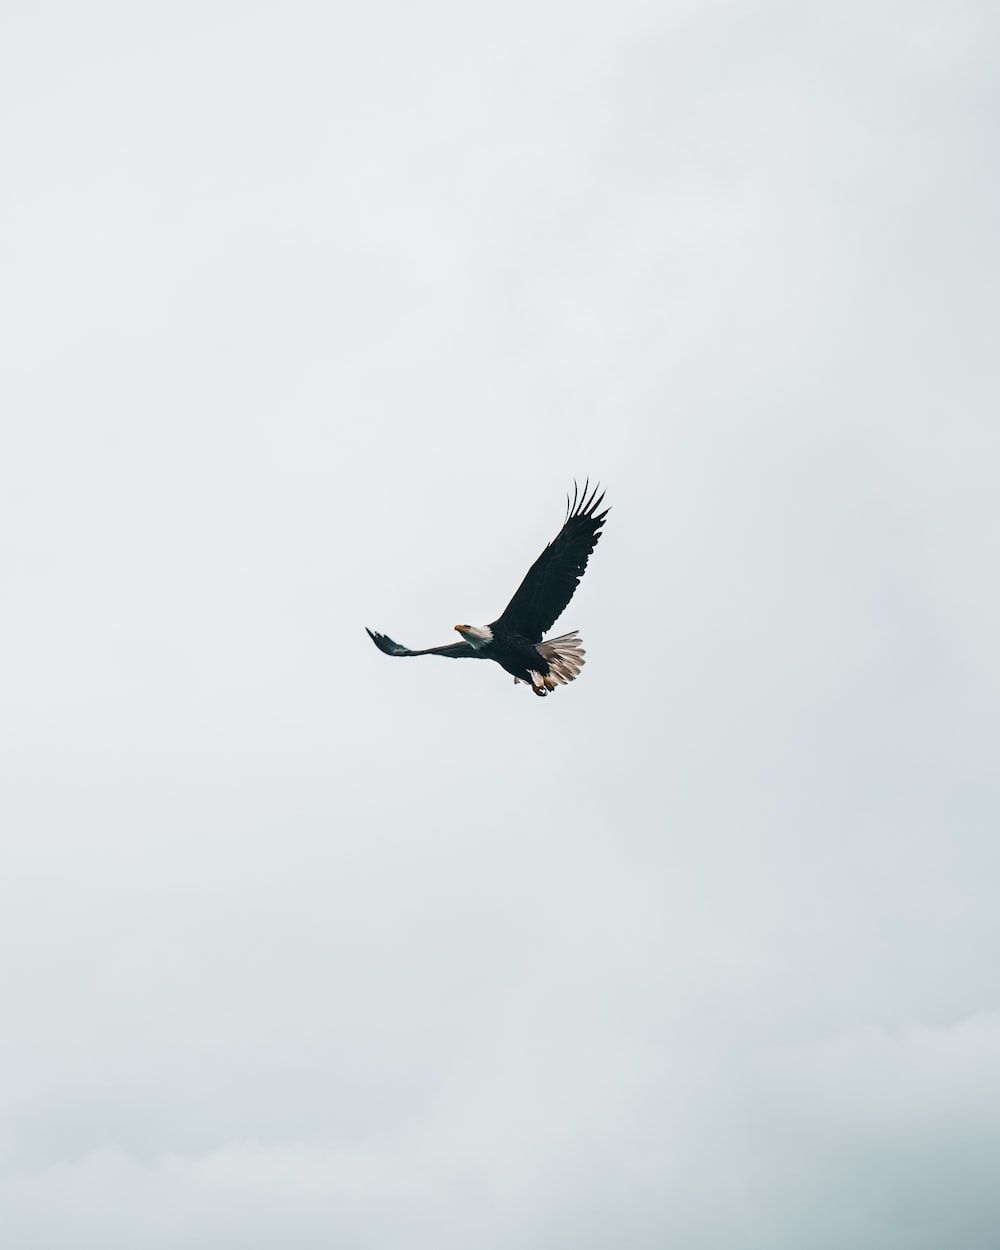  Adler Hintergrundbild 1000x1250. Foto zum Thema Adler in der Luft während des Tages